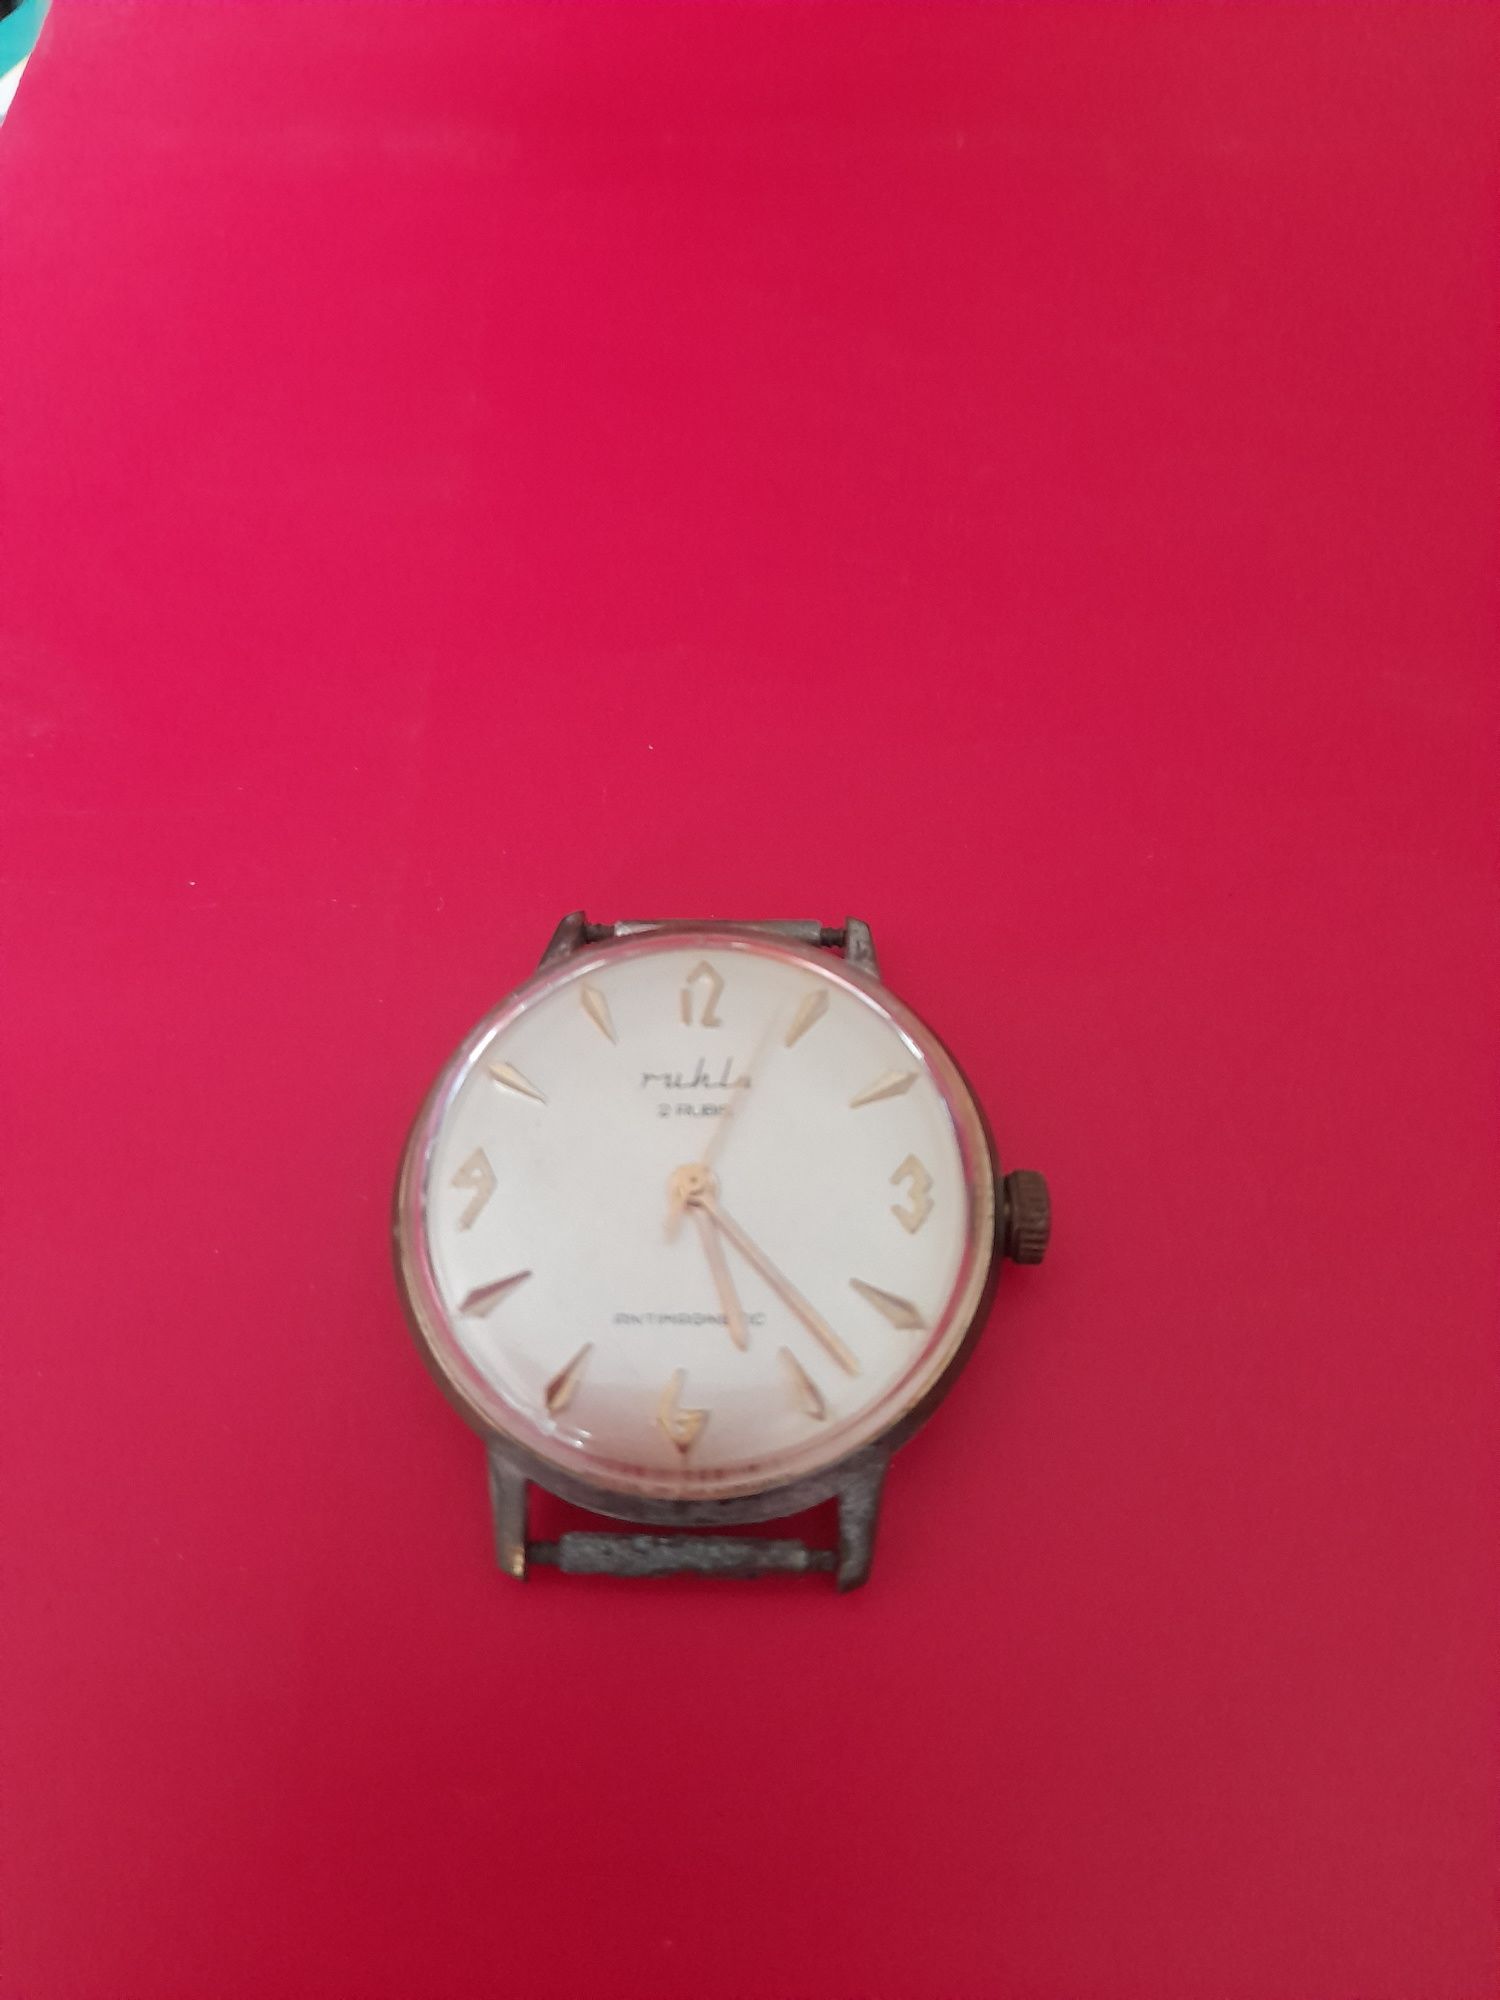 Ръчен часовник Ruhla, произведен в ГДР Източна Германия